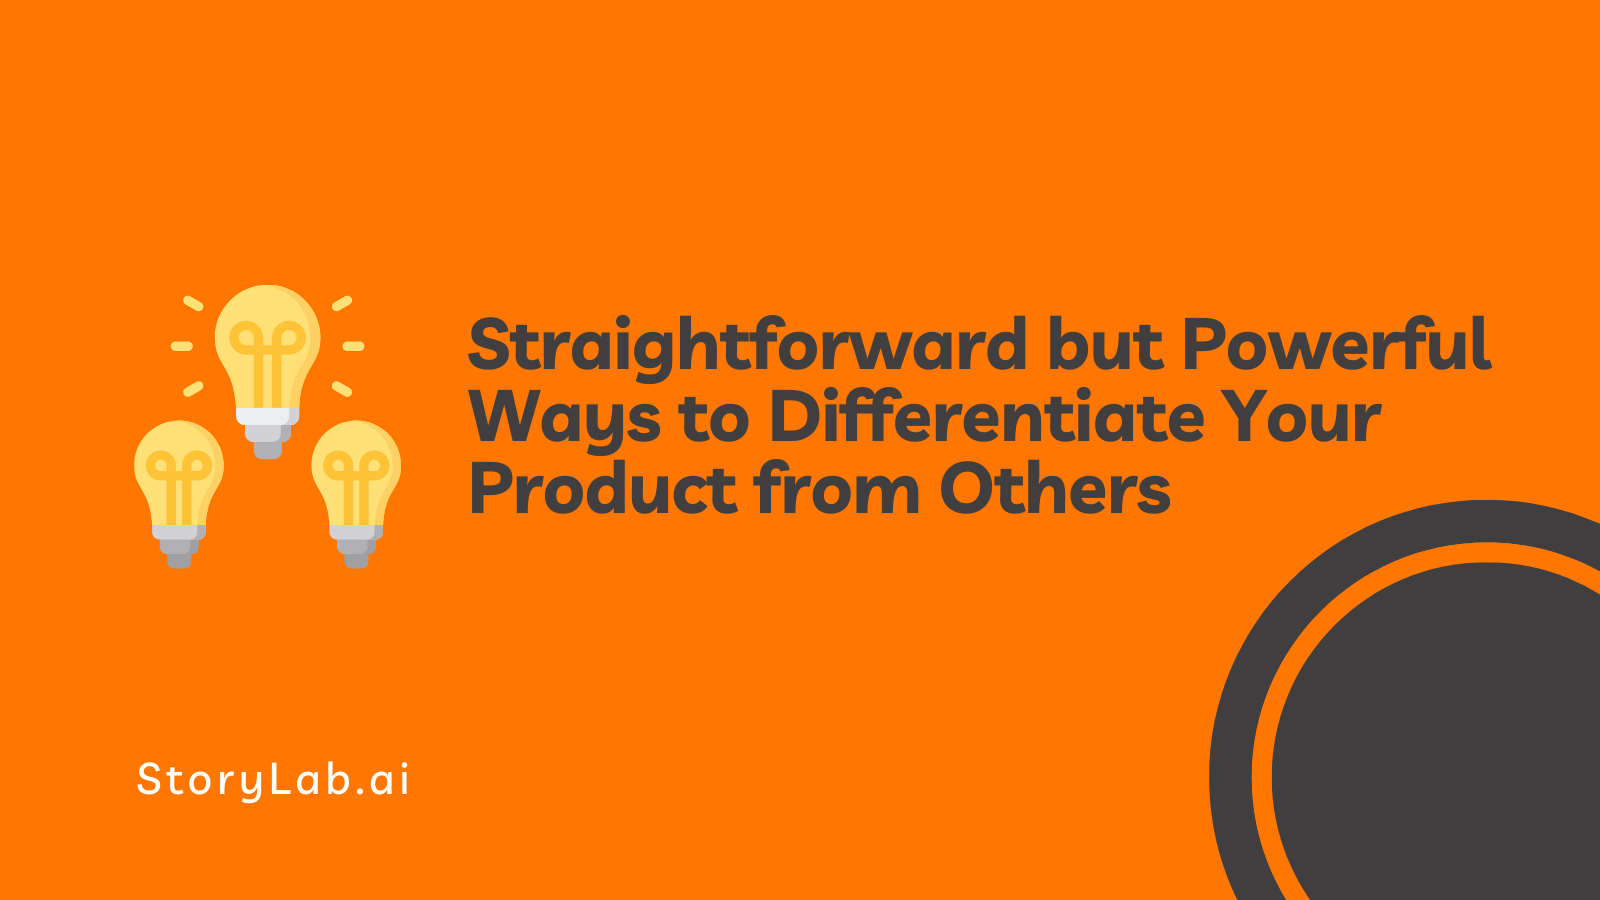 Maneiras simples, mas poderosas de diferenciar seu produto de outros